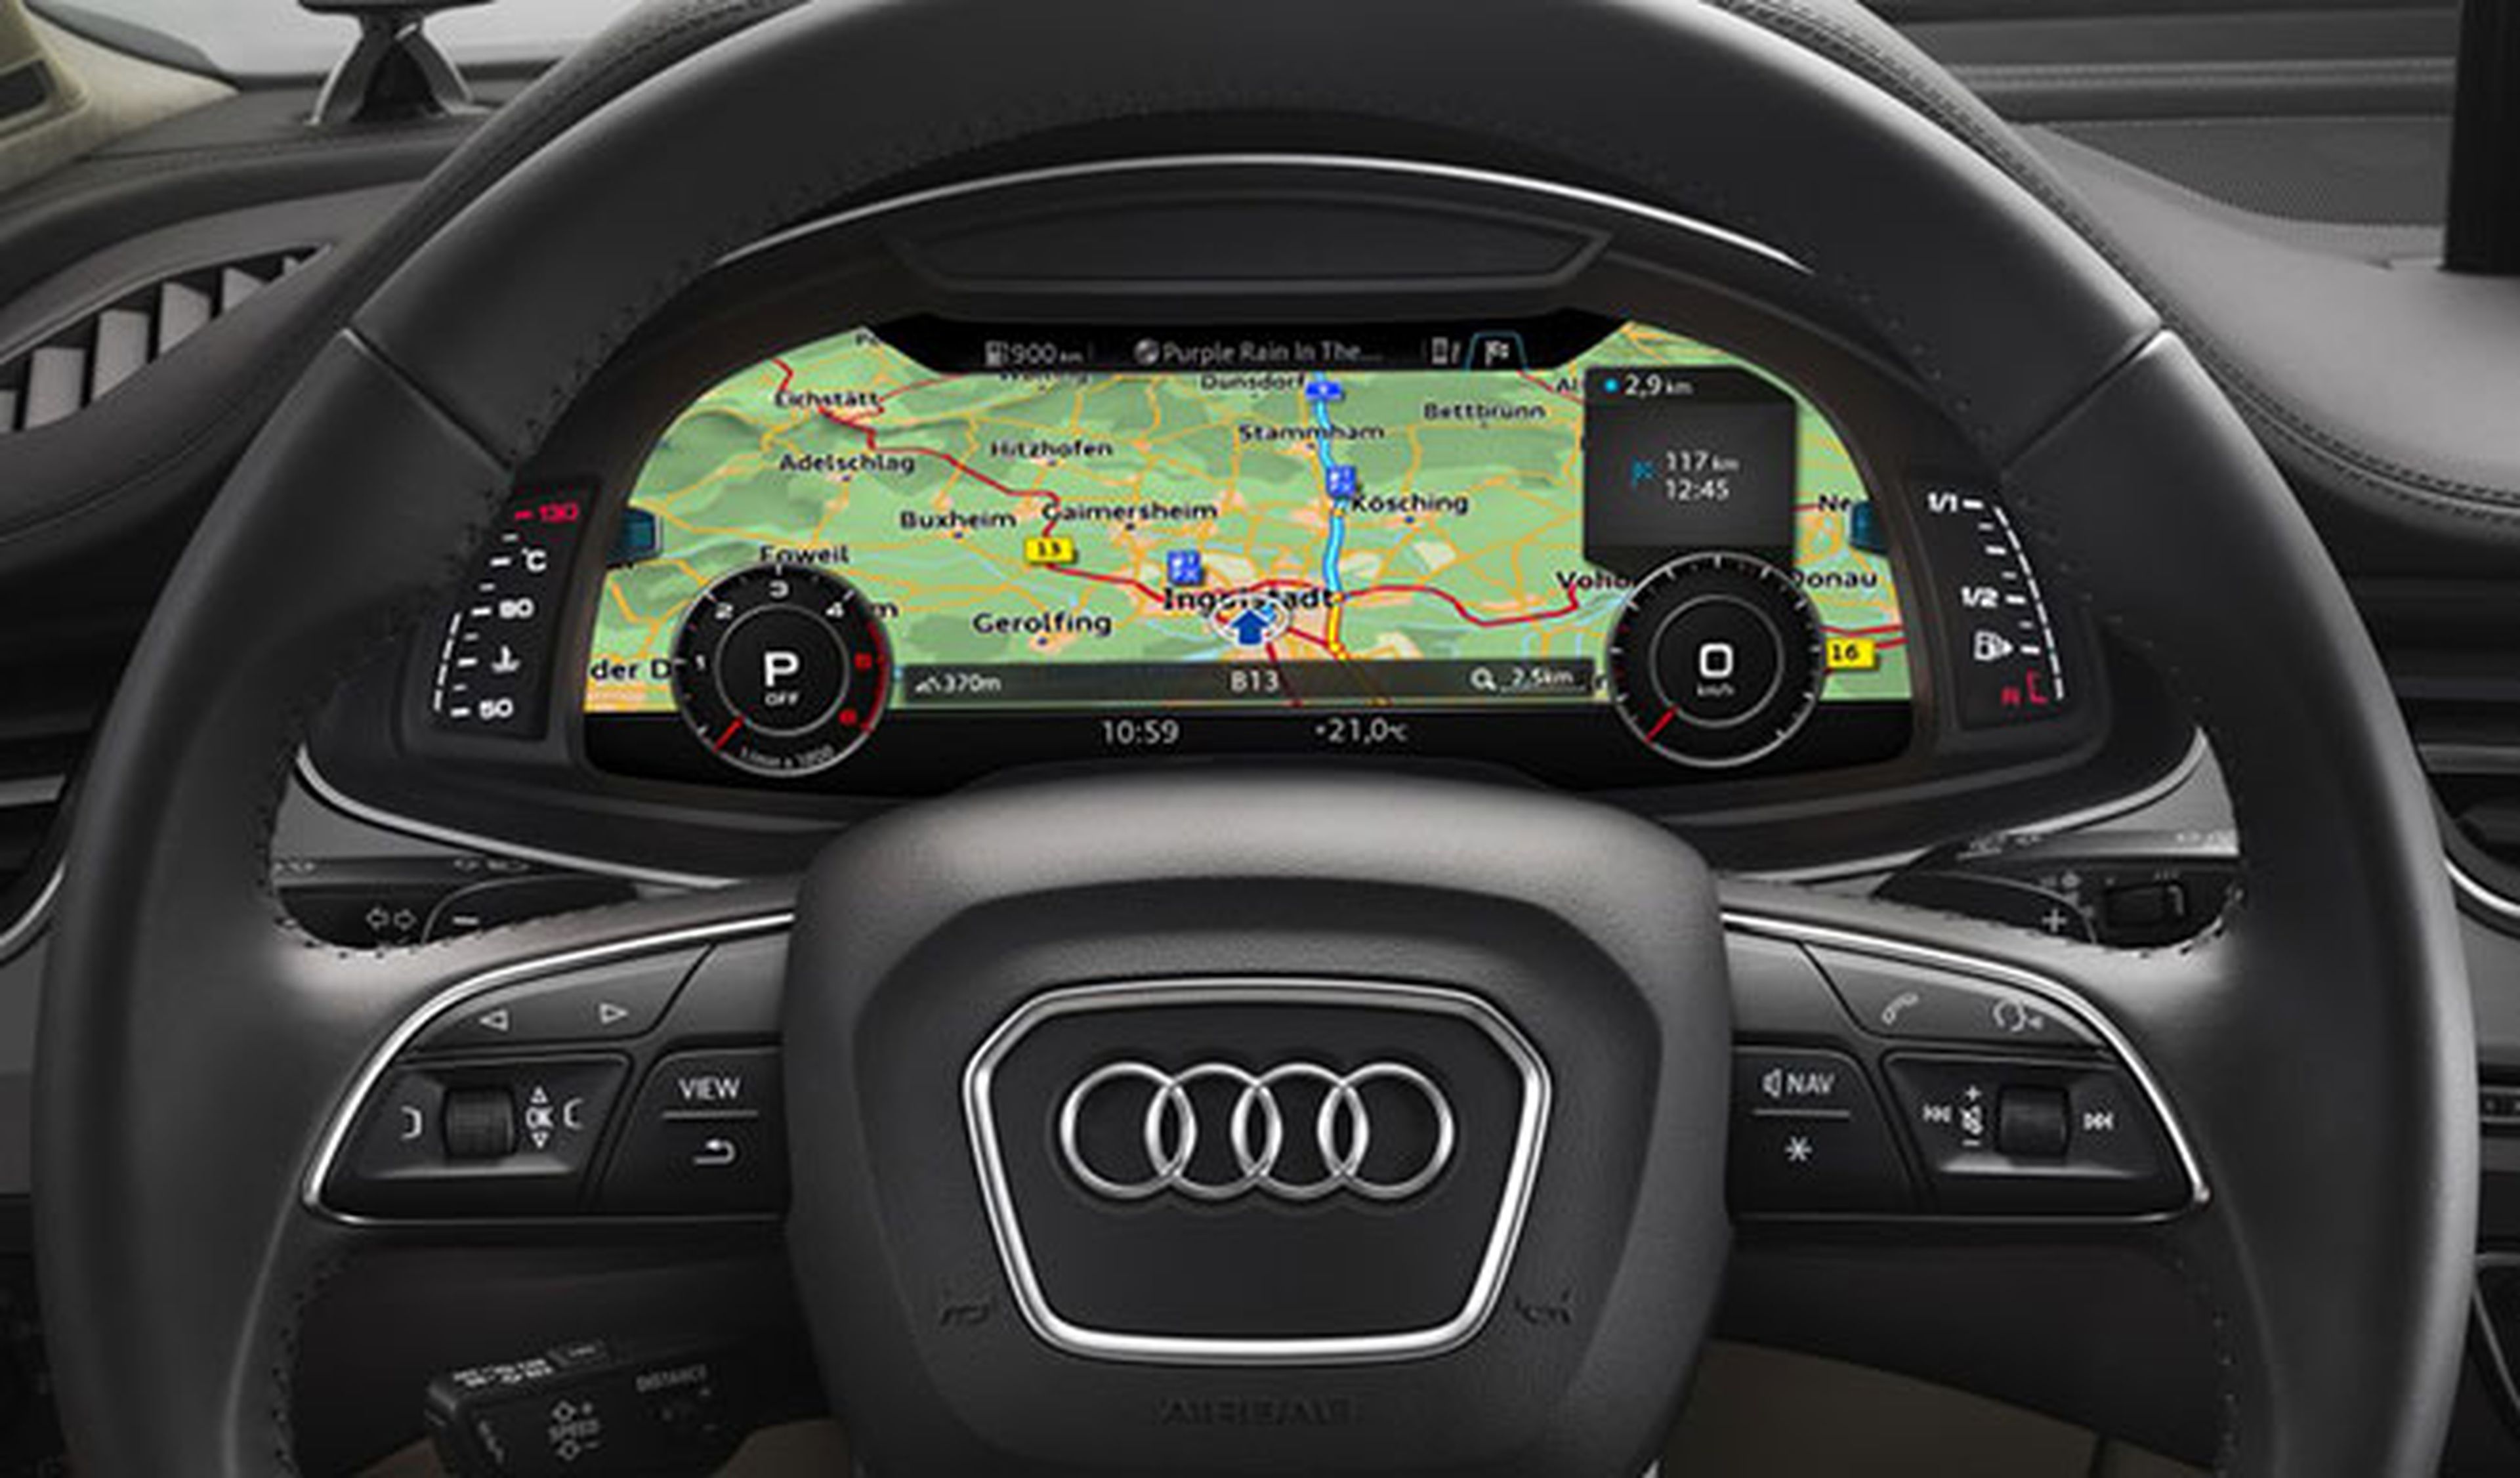 Audi utiliza mapas tridimensionales de alta resolución